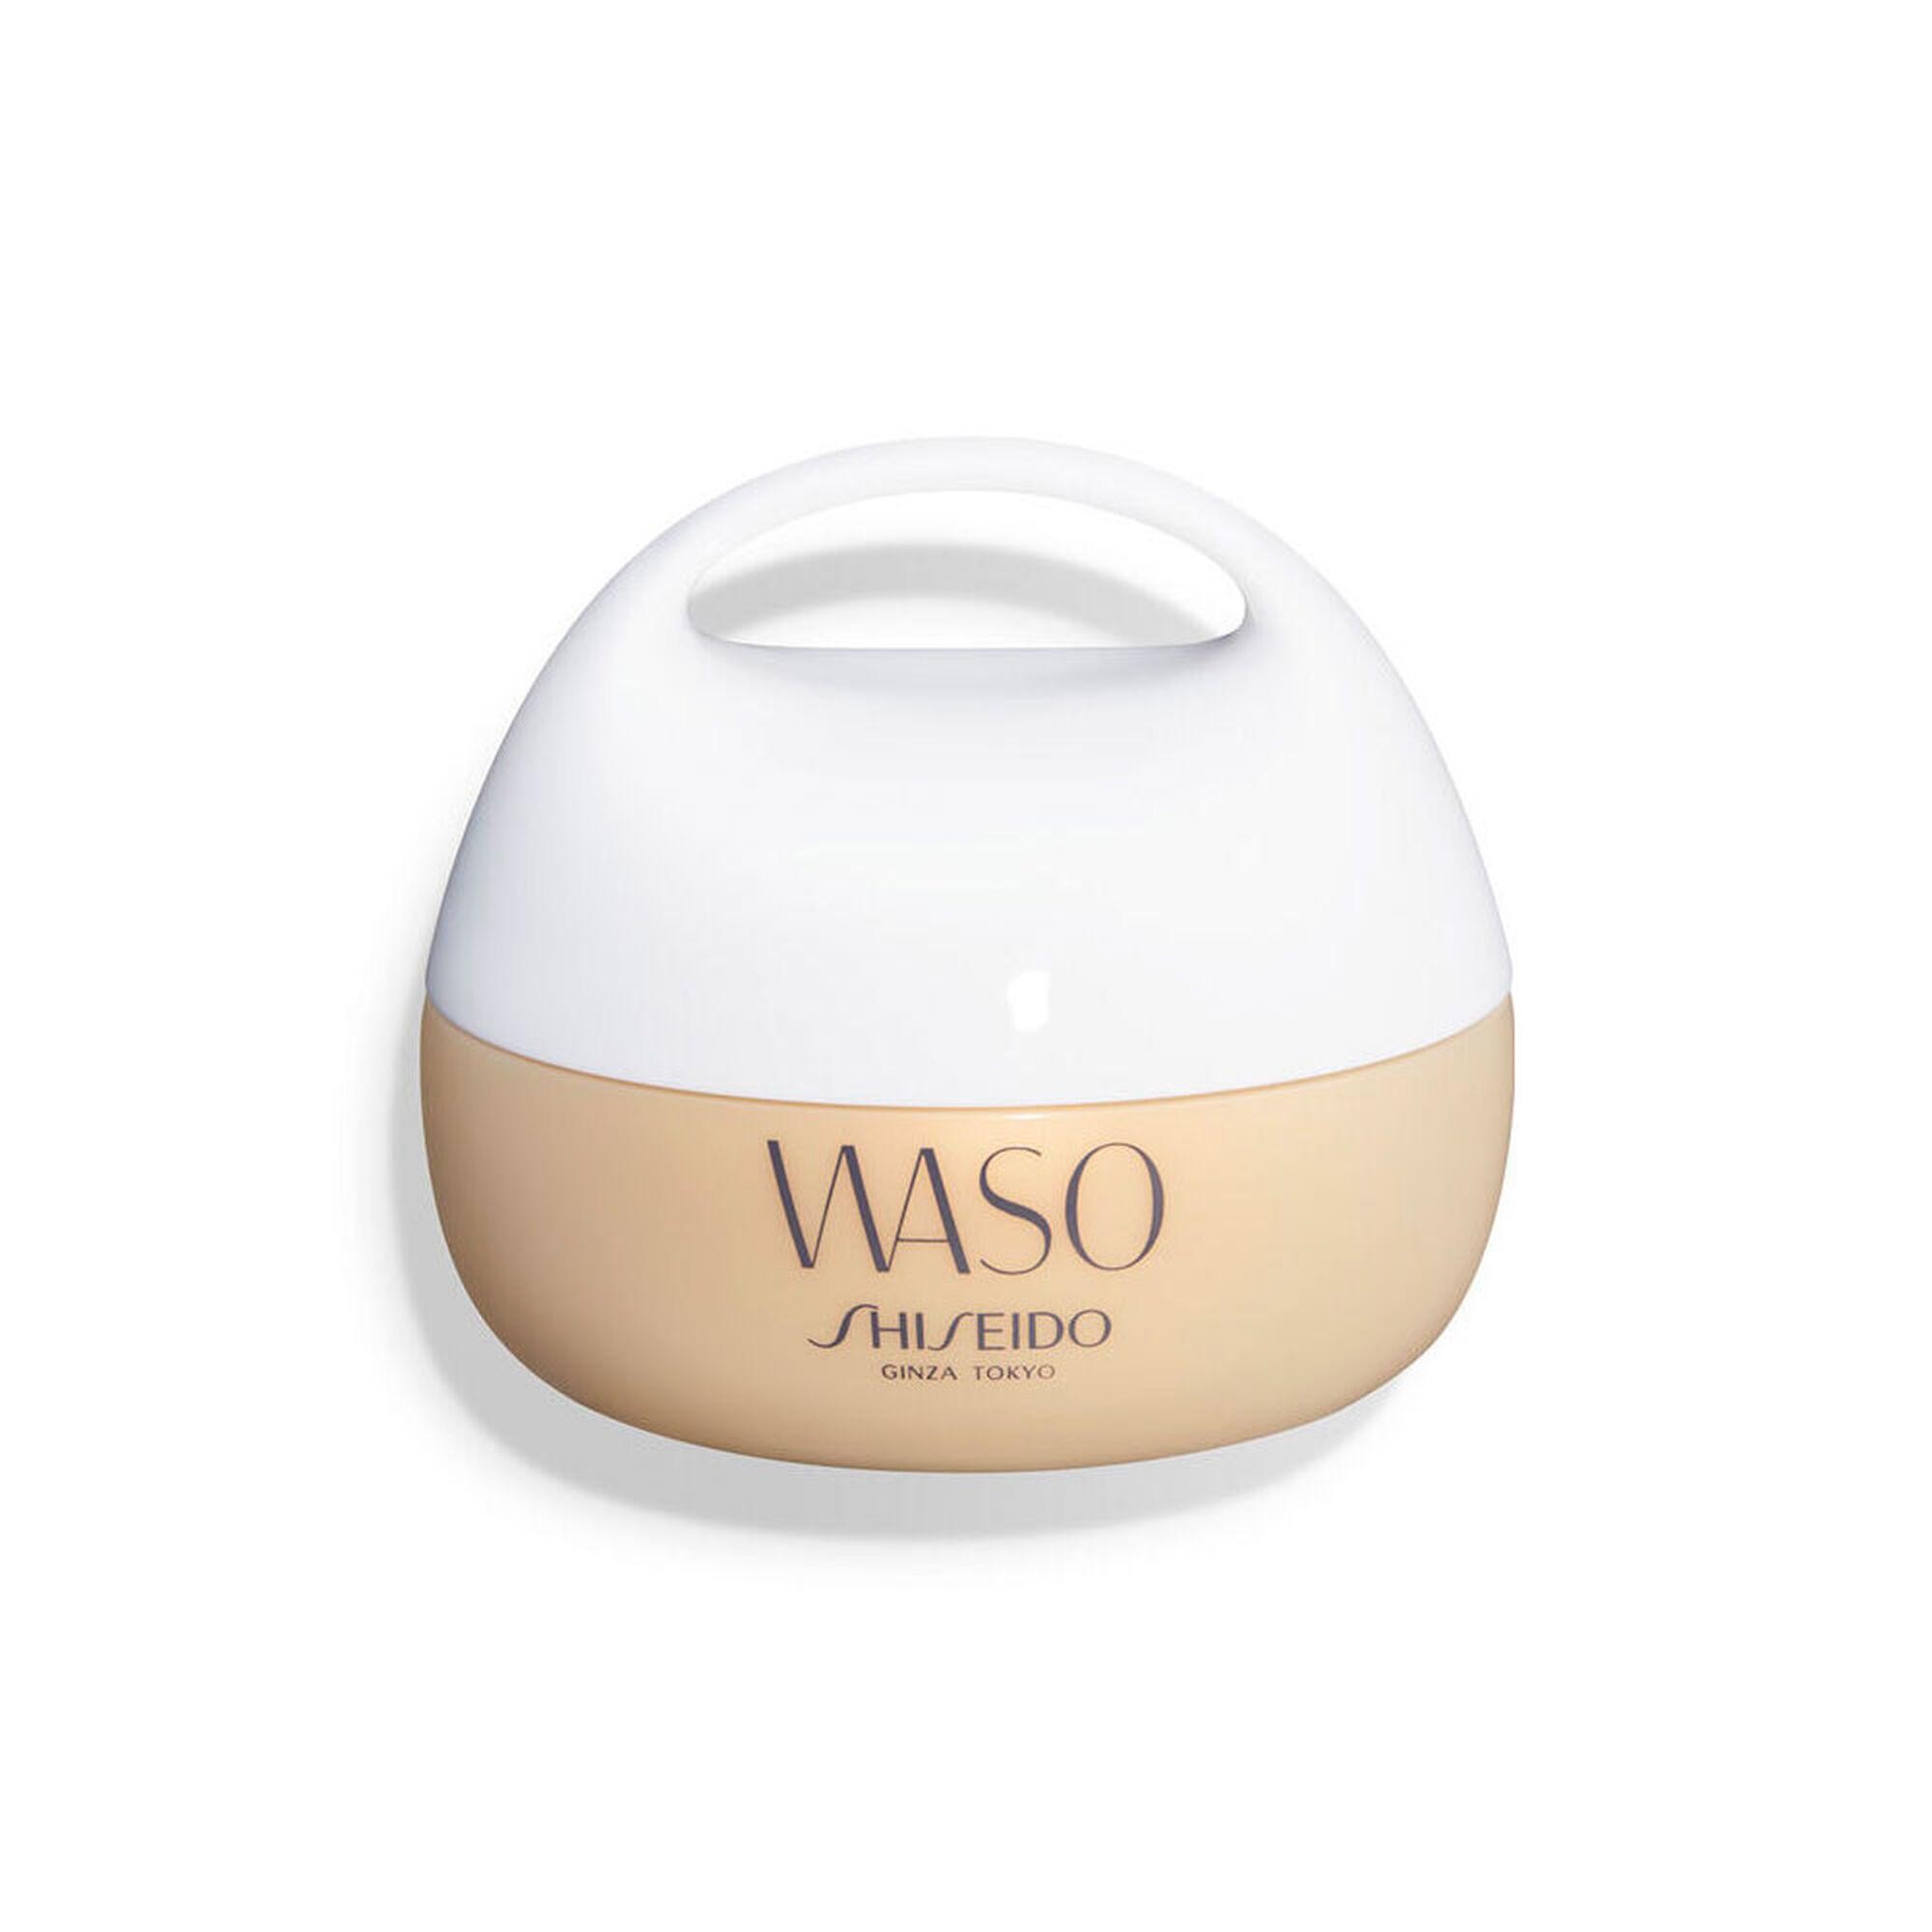 Shiseido Waso Giga-Hydrating Rich Cream